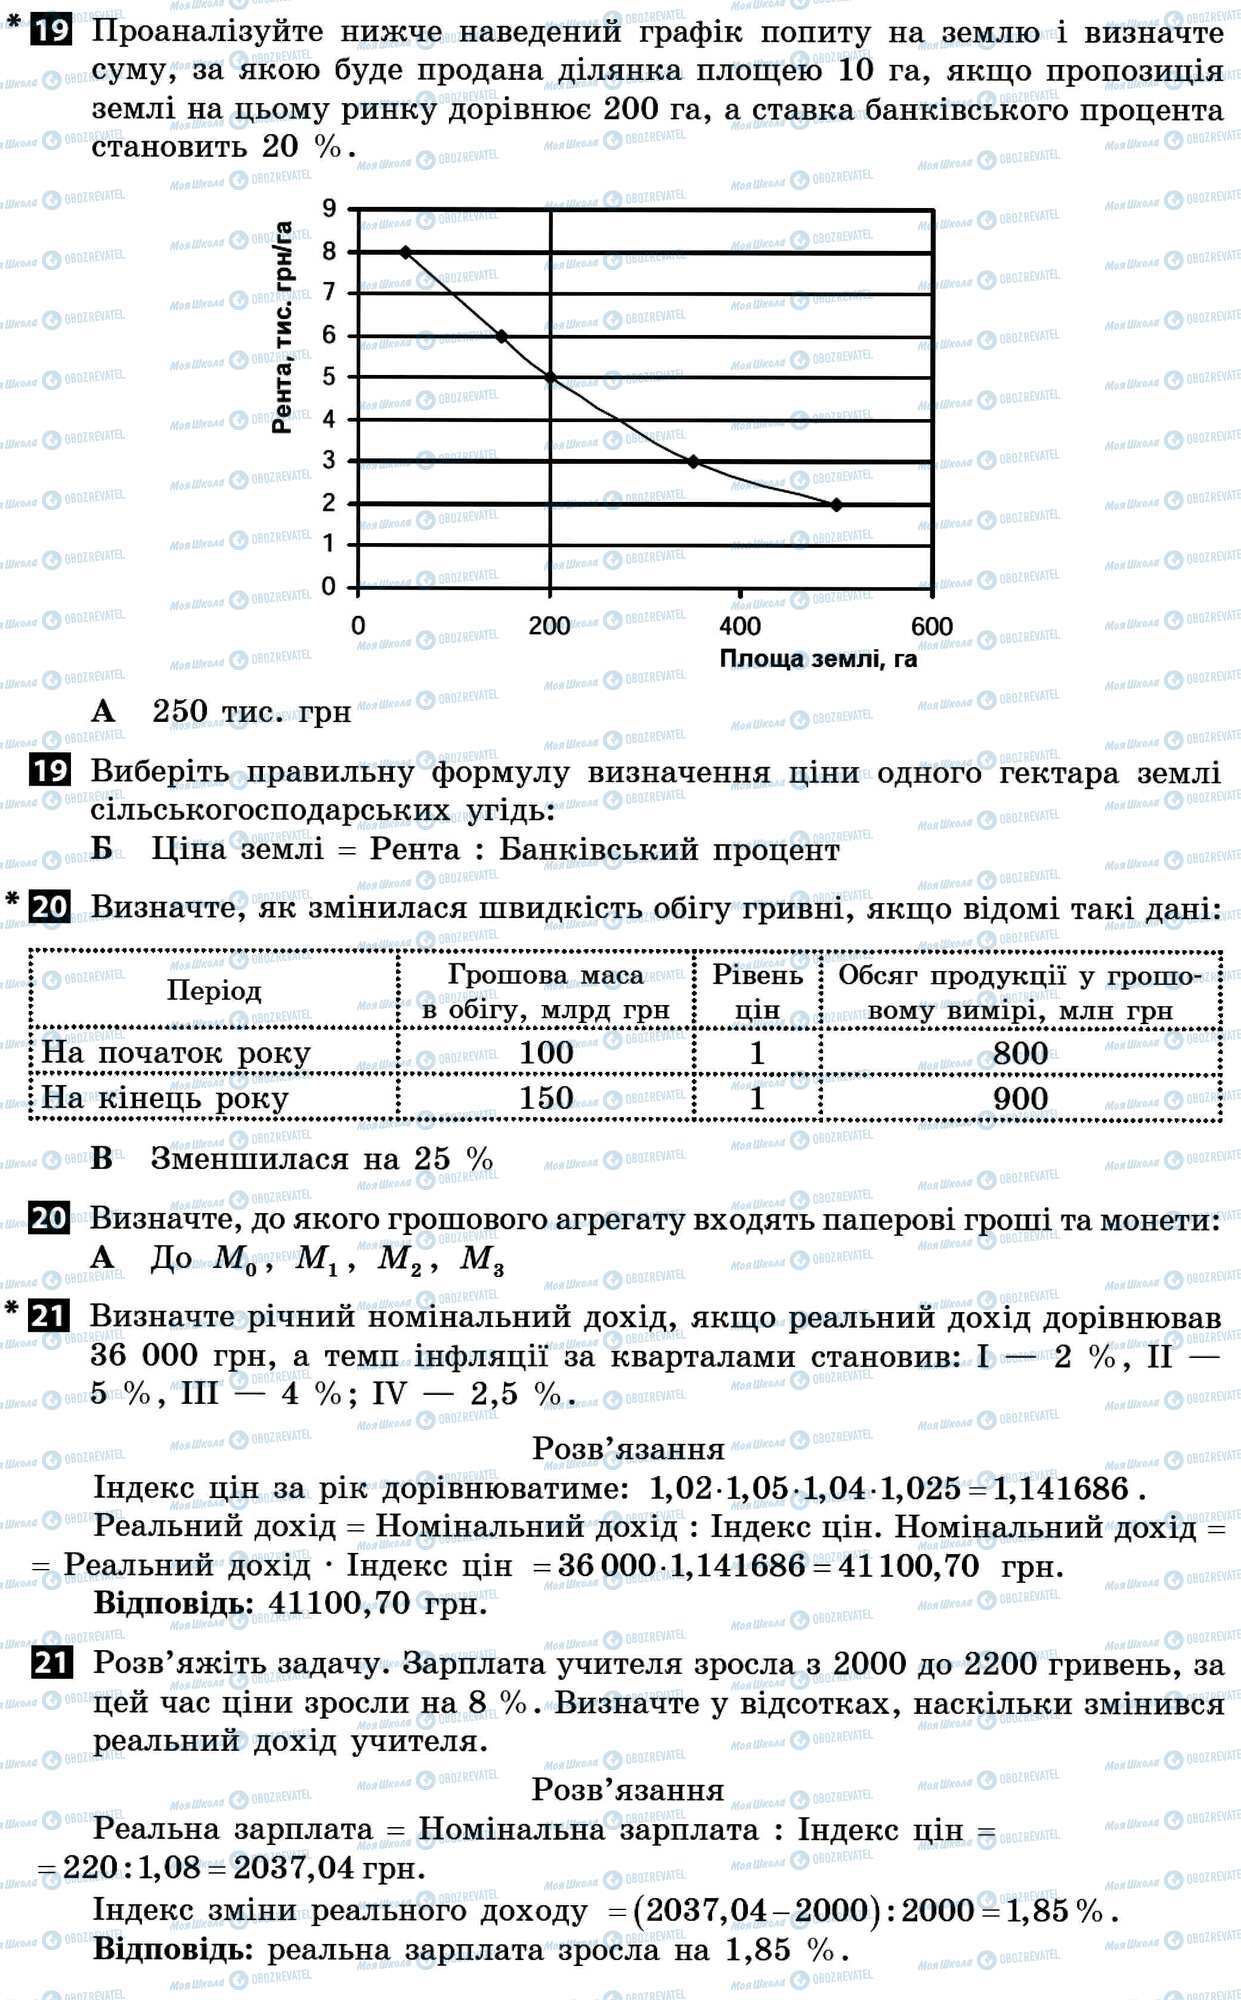 ДПА Экономика 11 класс страница 19-21